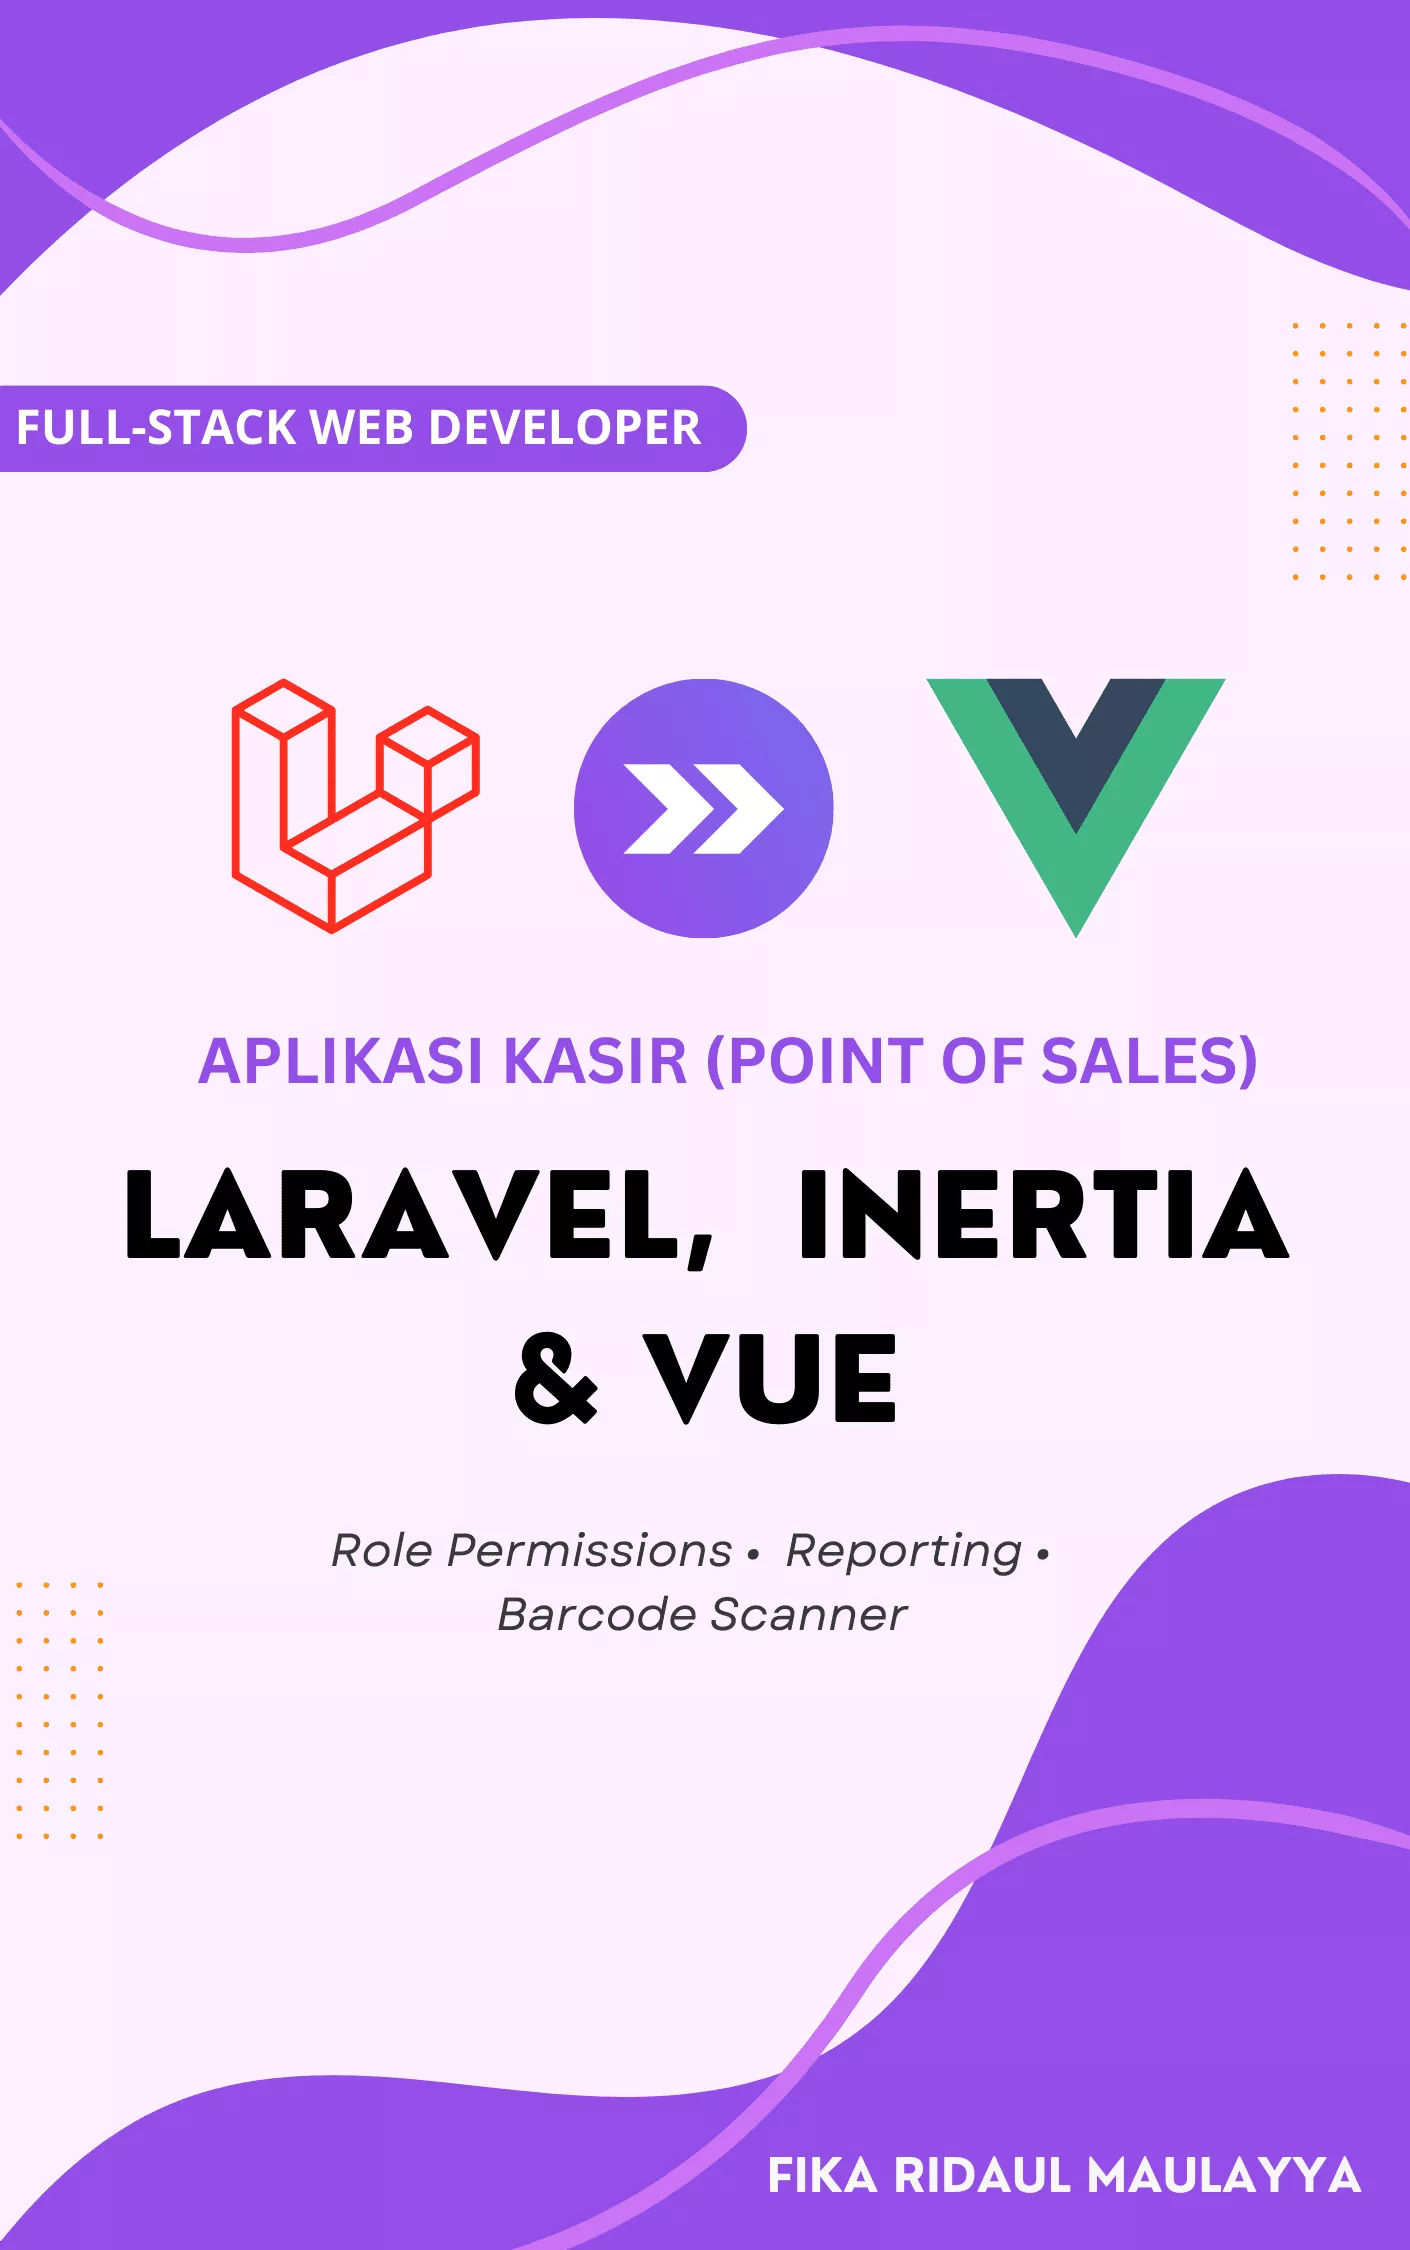 Membangun Aplikasi Kasir (Point of Sales) dengan Laravel, Inertia.js dan Vue.js